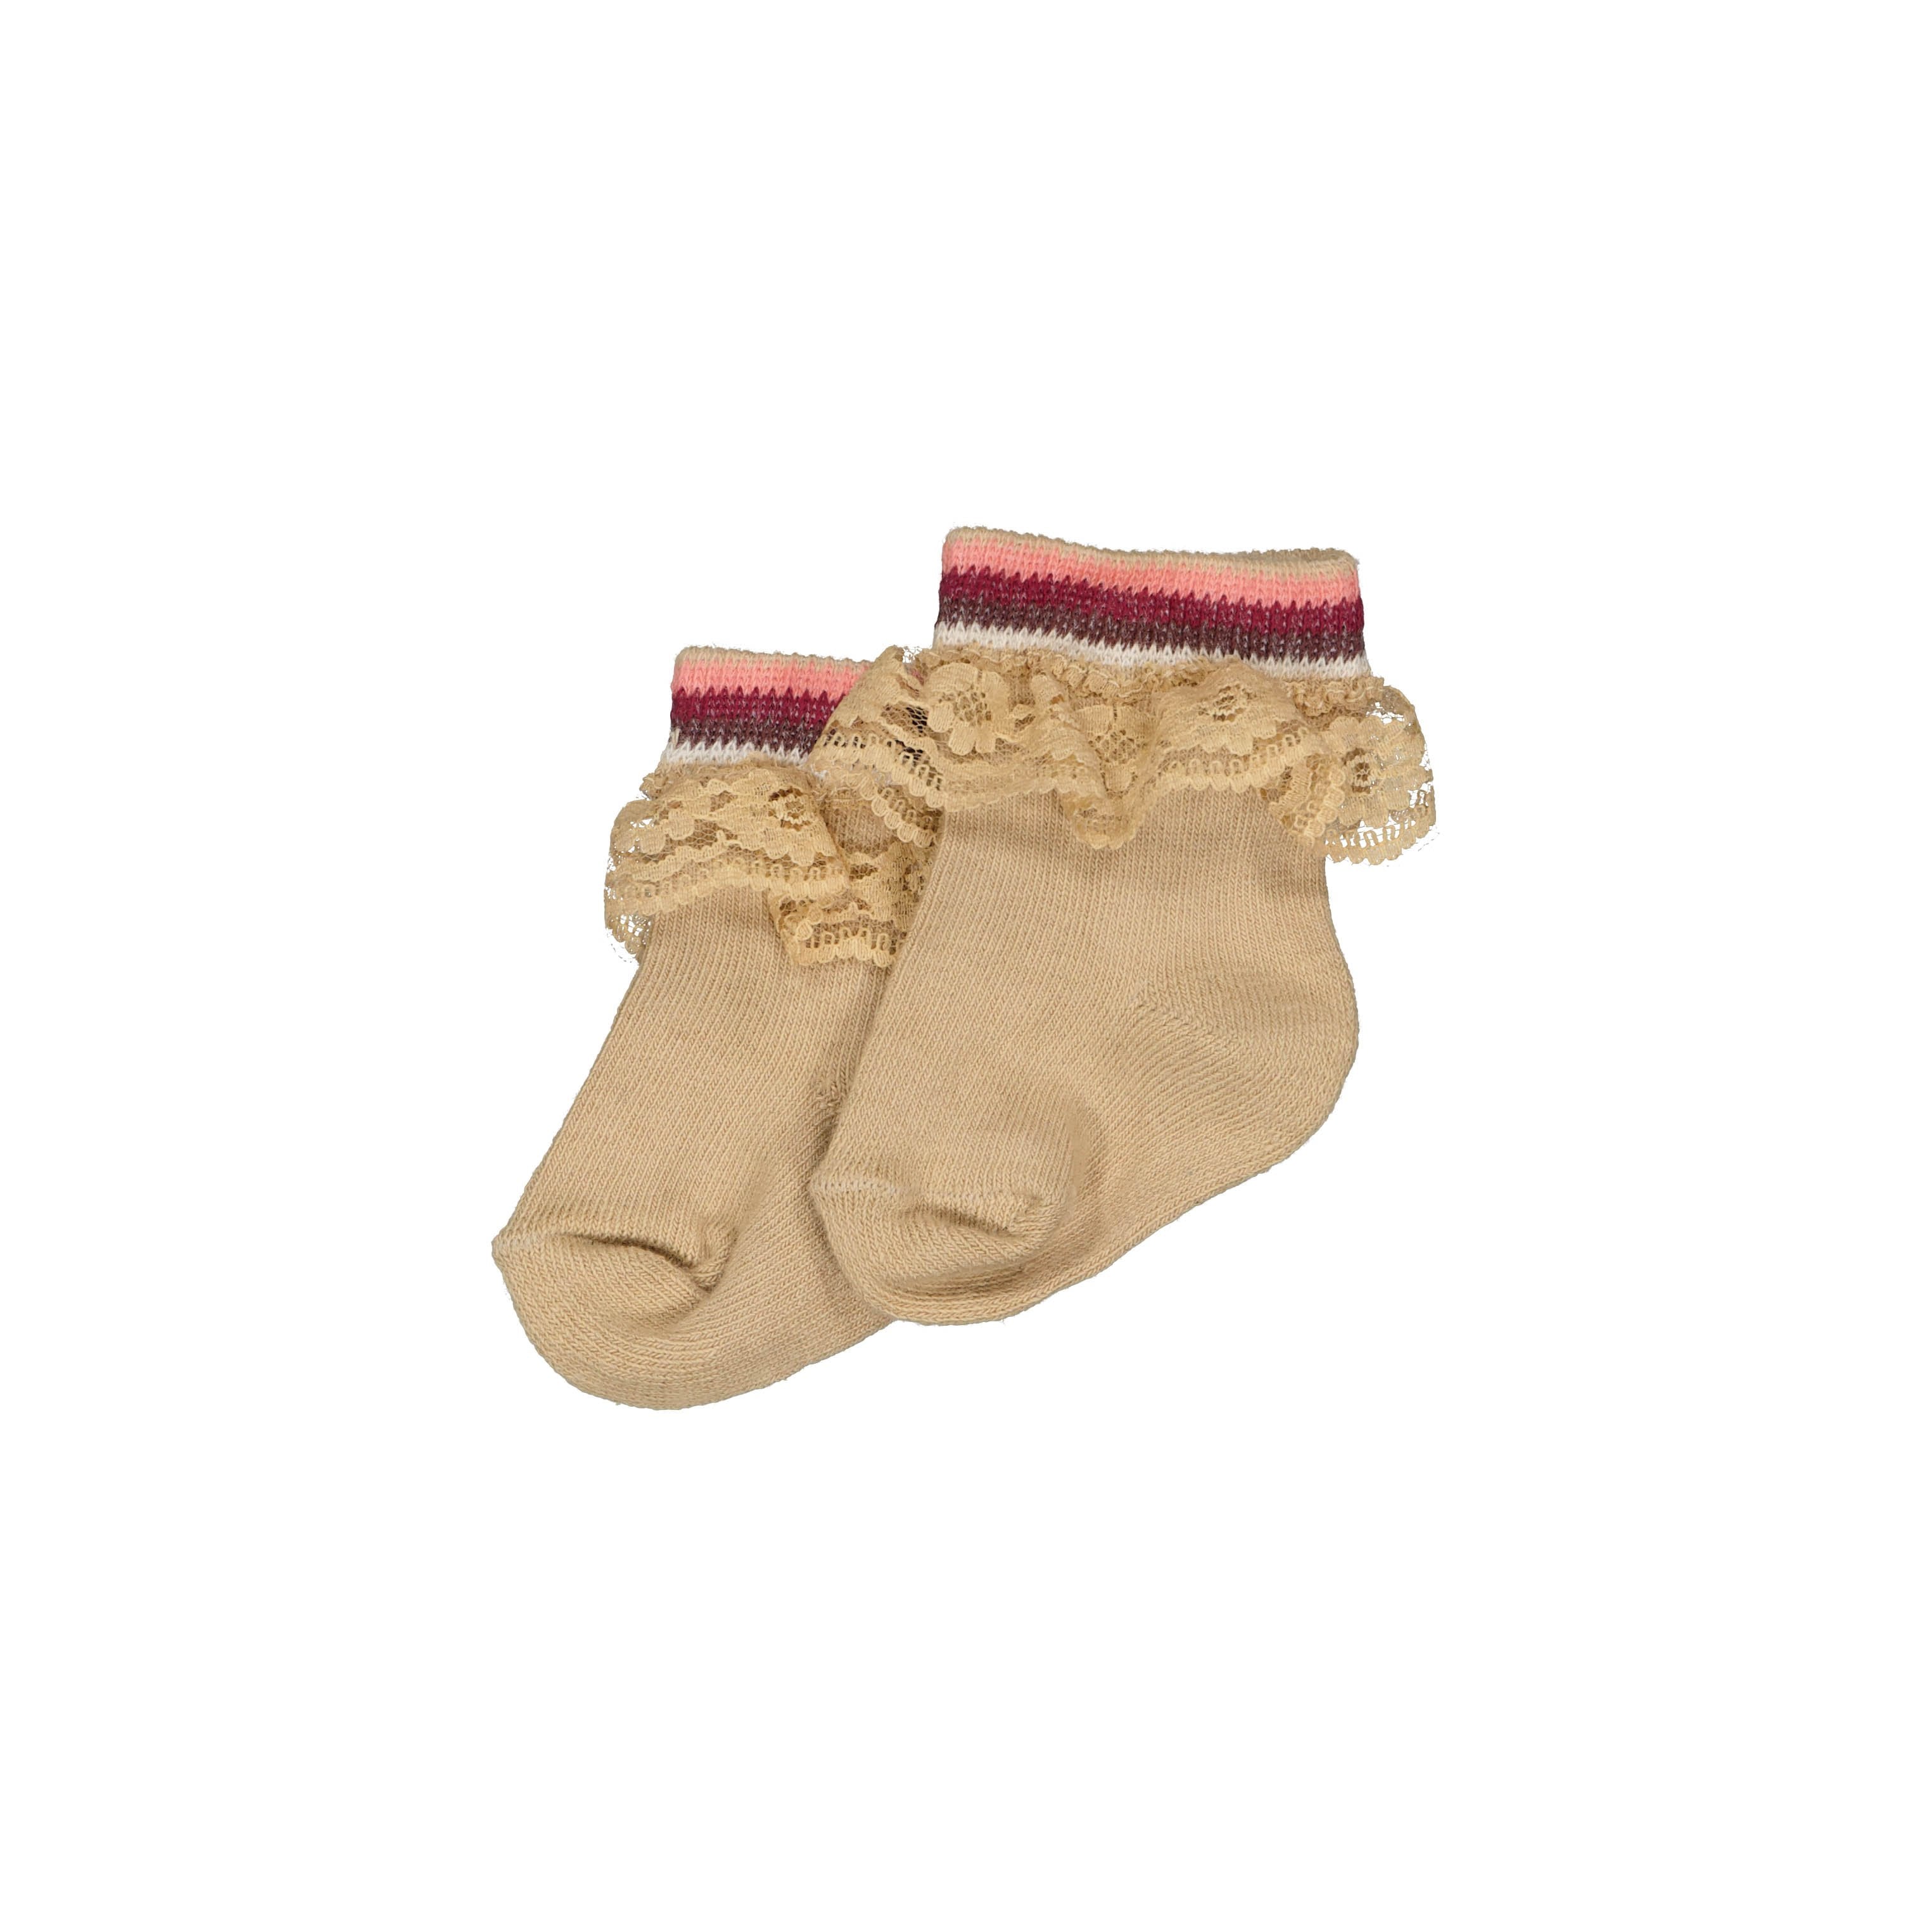 Meisjes Socks MIRTE NBW21 van Quapi Newborn in de kleur Sand in maat ONESIZE.